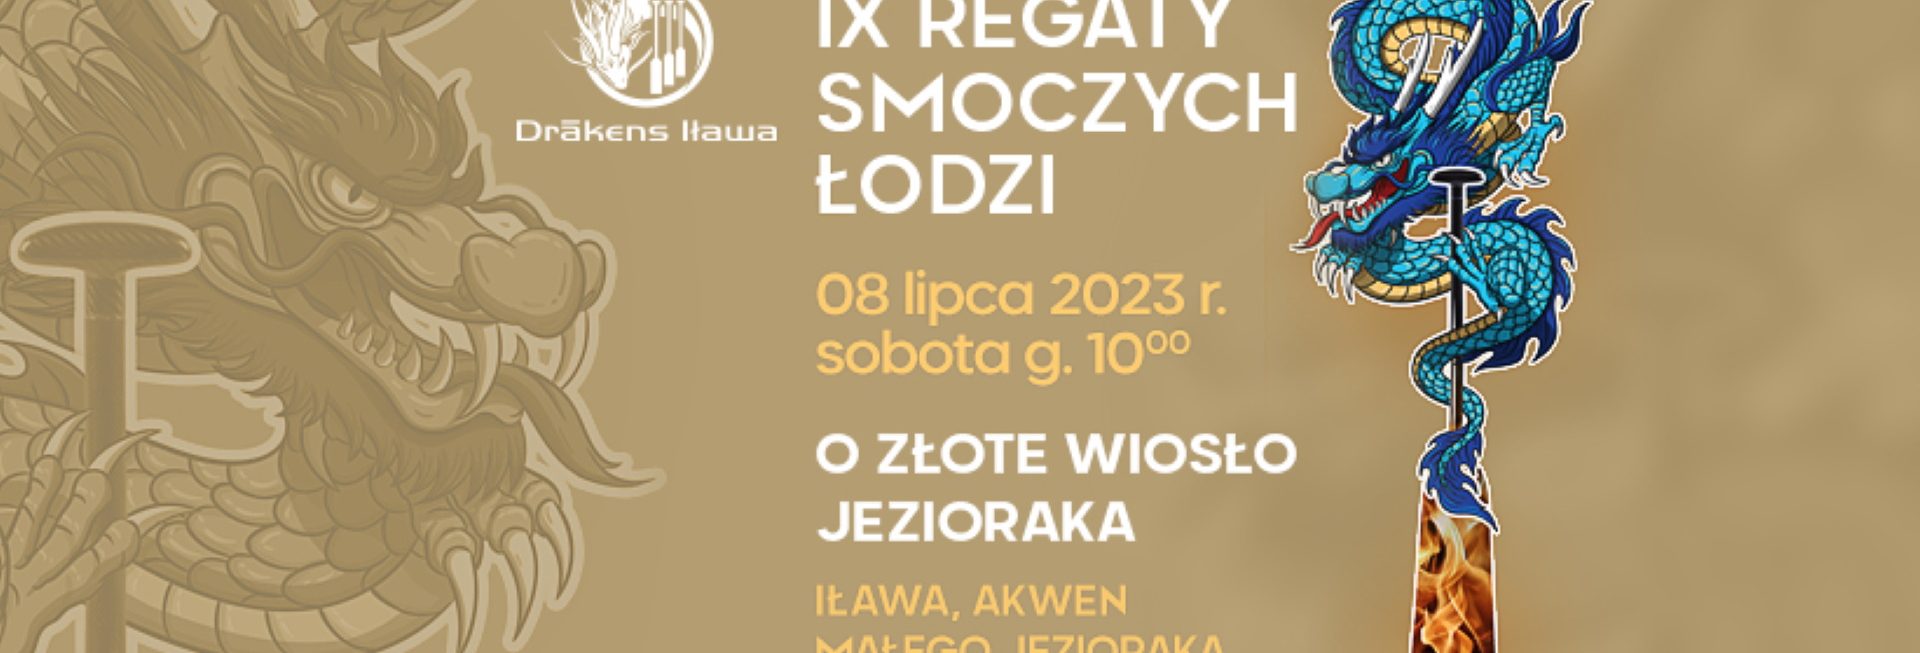 Plakat zapraszający do Iławy na 9. edycję Regat Łodzi Smoczych o Złote Wiosło Jezioraka Iława 2023. 